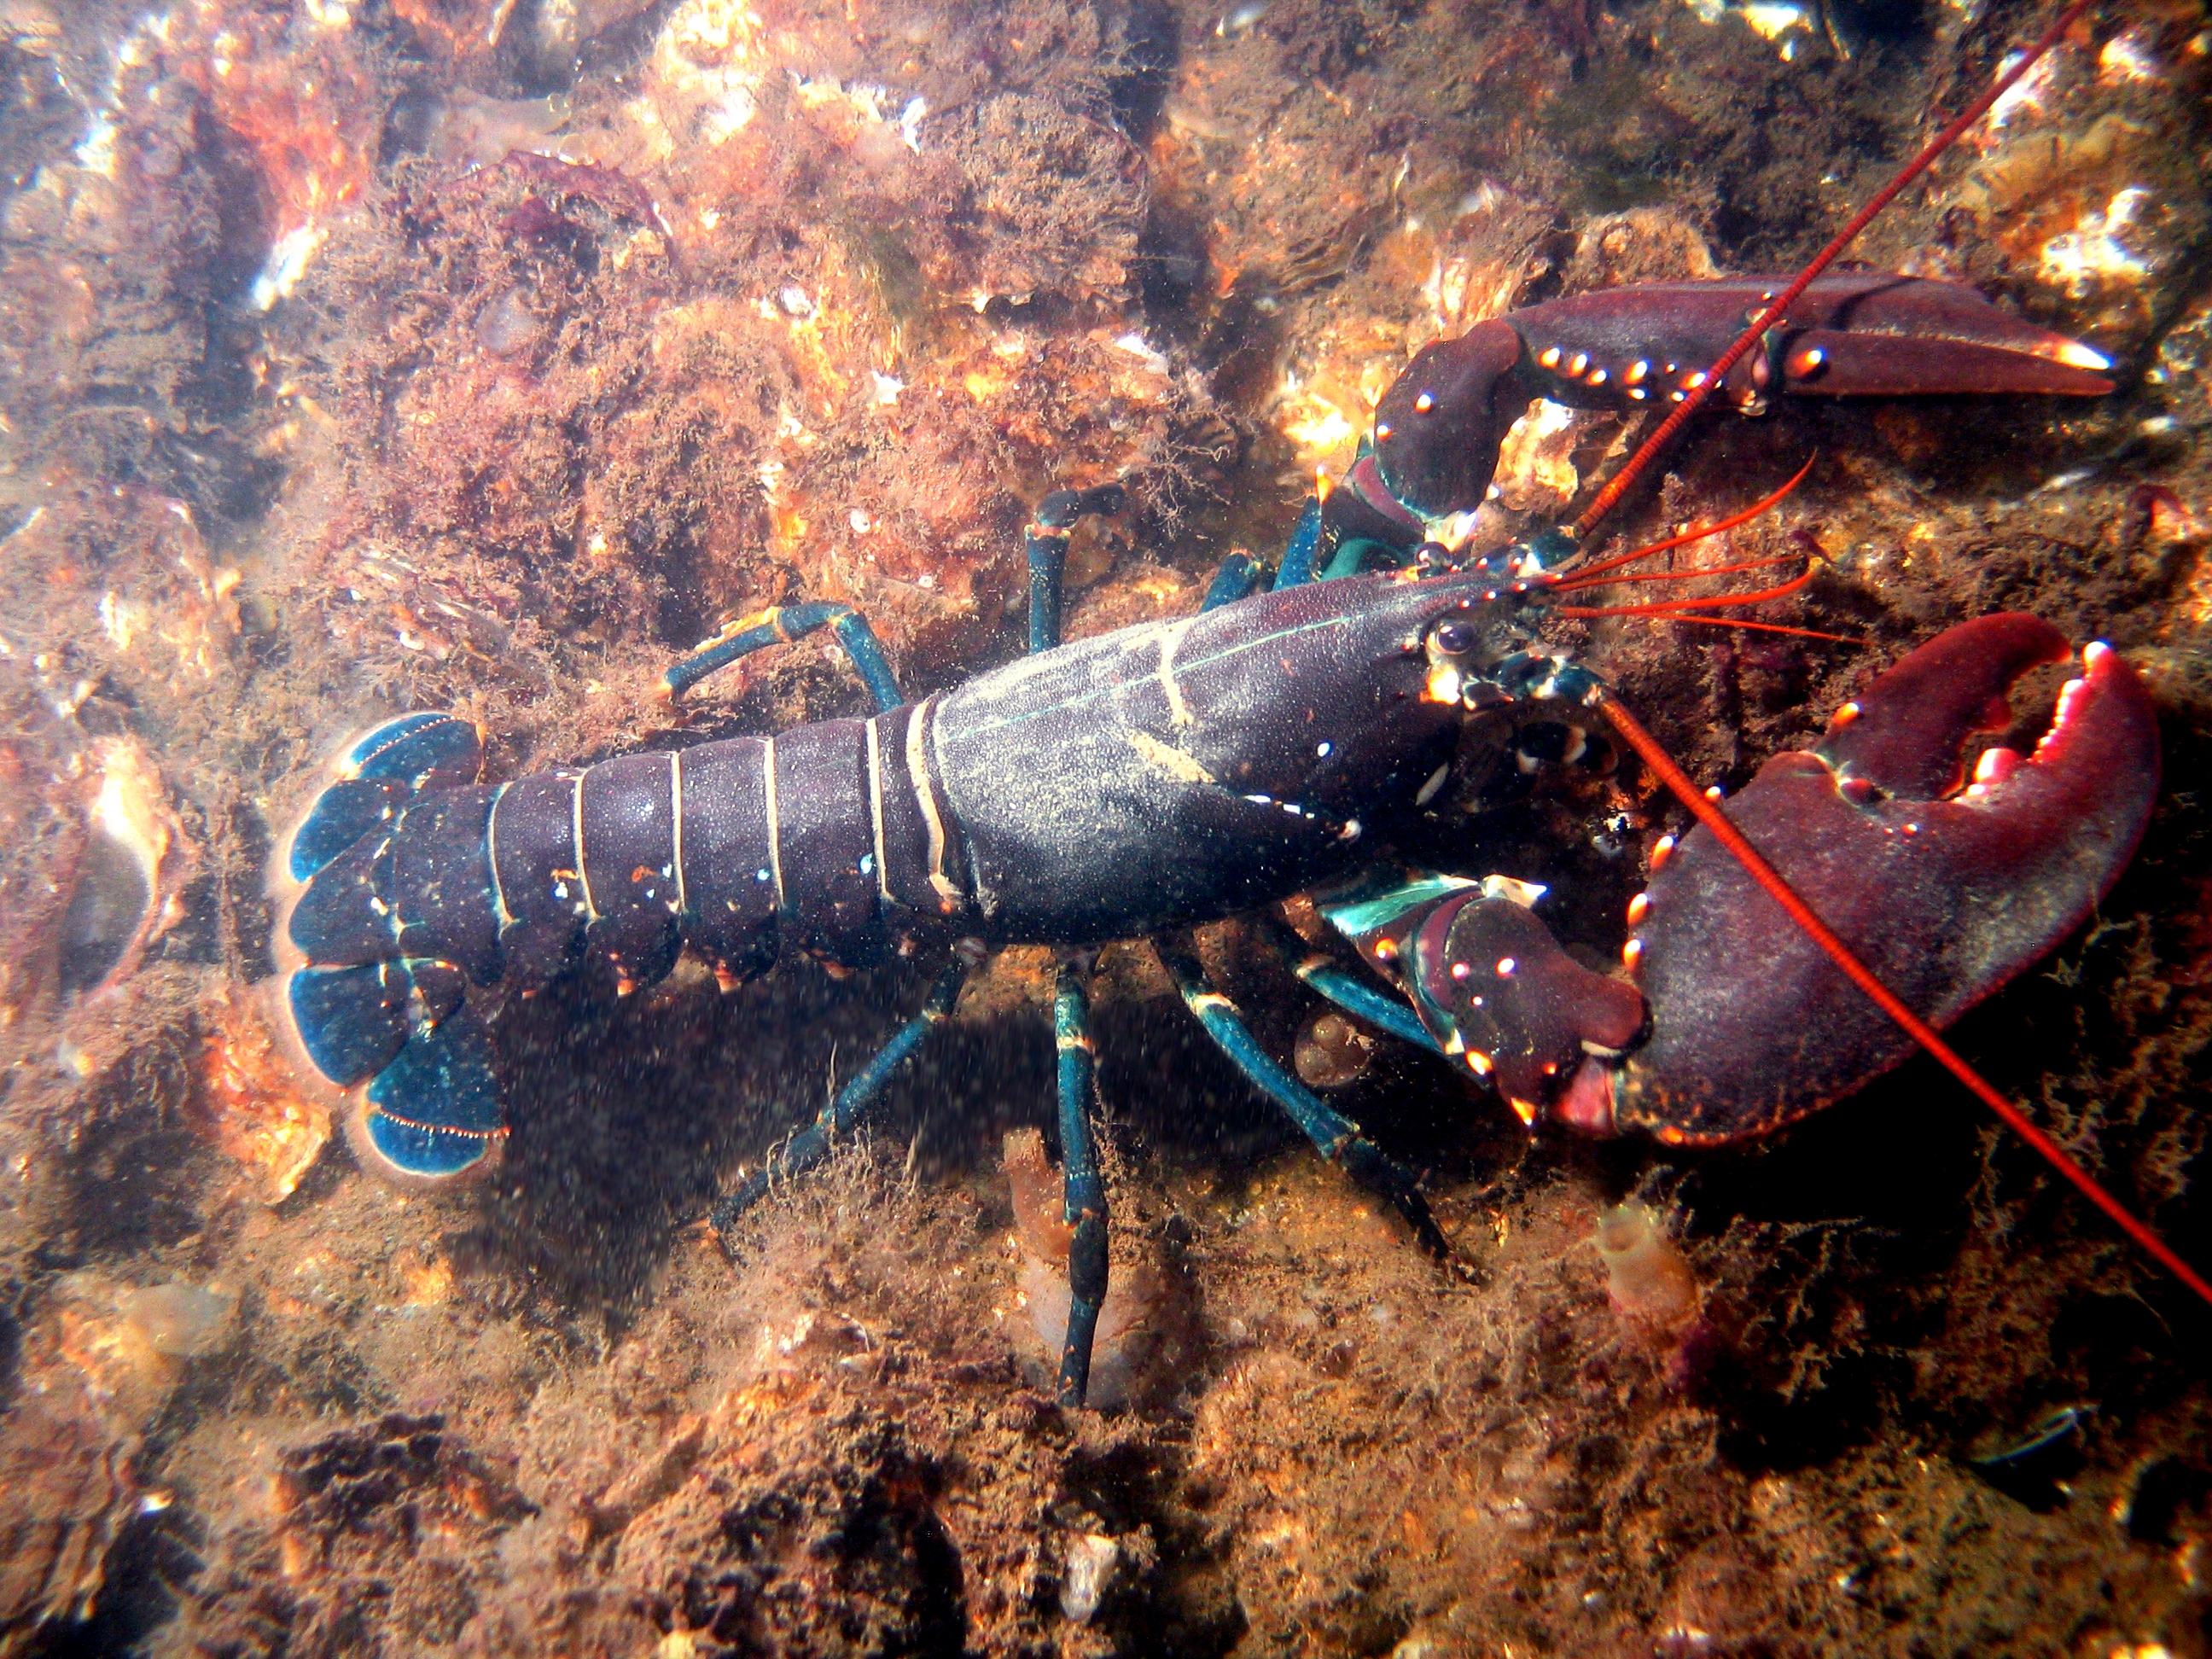 Image Of Lobster - KibrisPDR